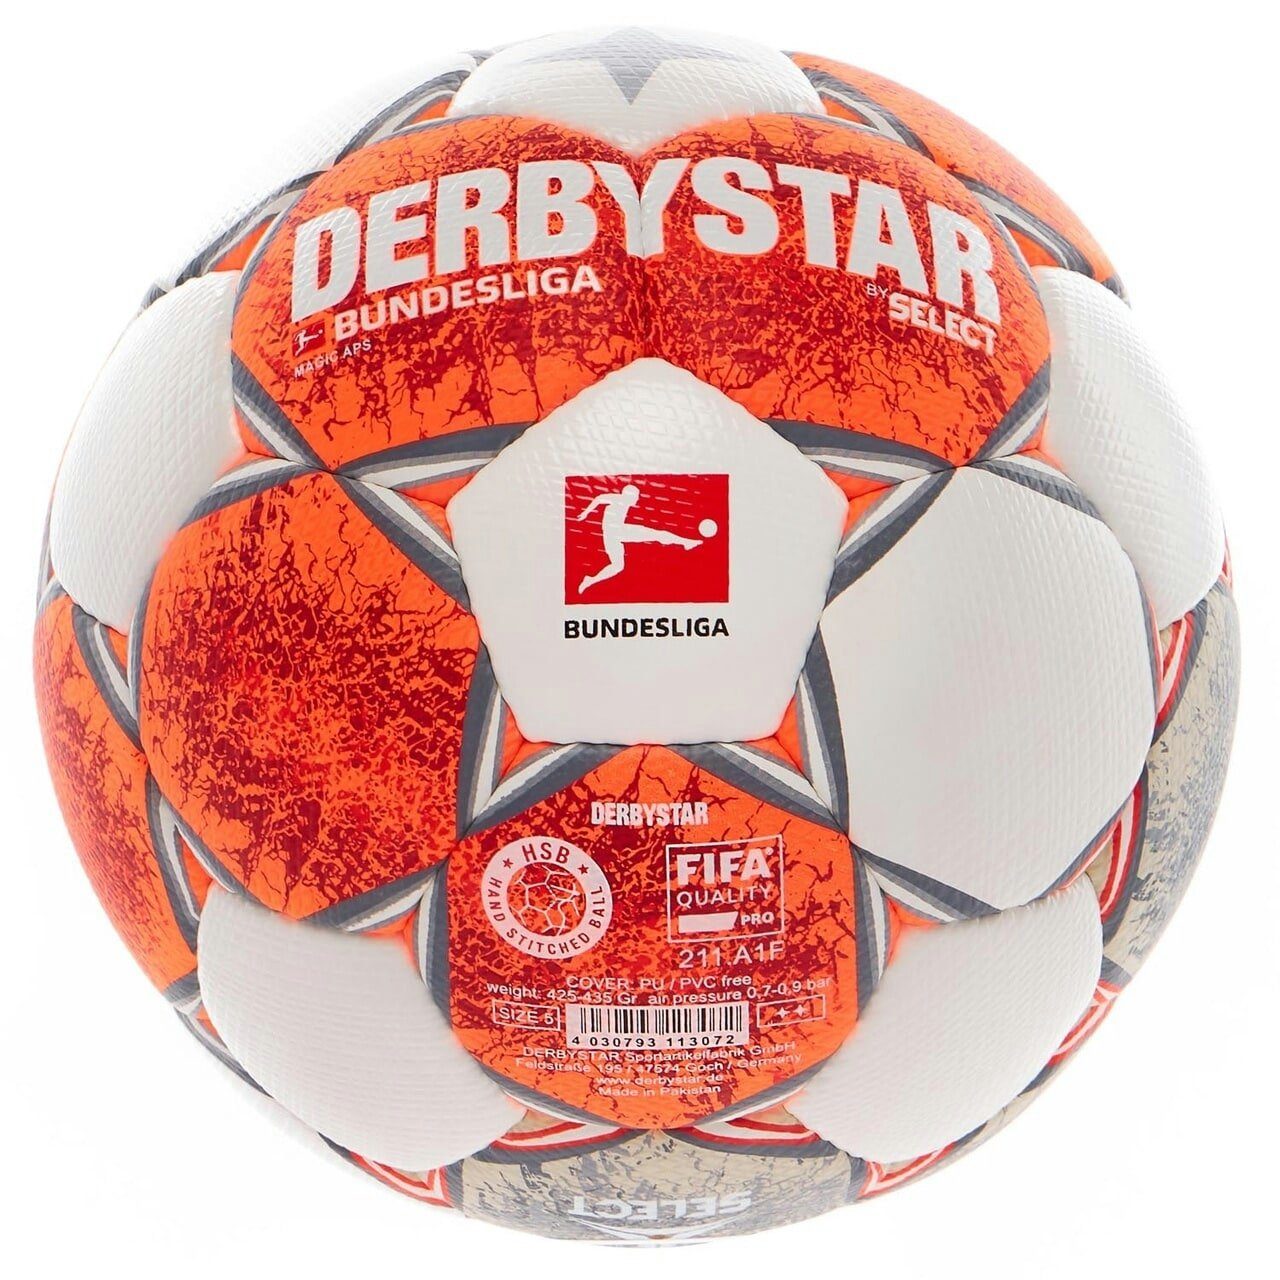 Fußball Fußball, v21 APS -Qualität Magic Spielball, bundesliga Bundesliga Derbystar